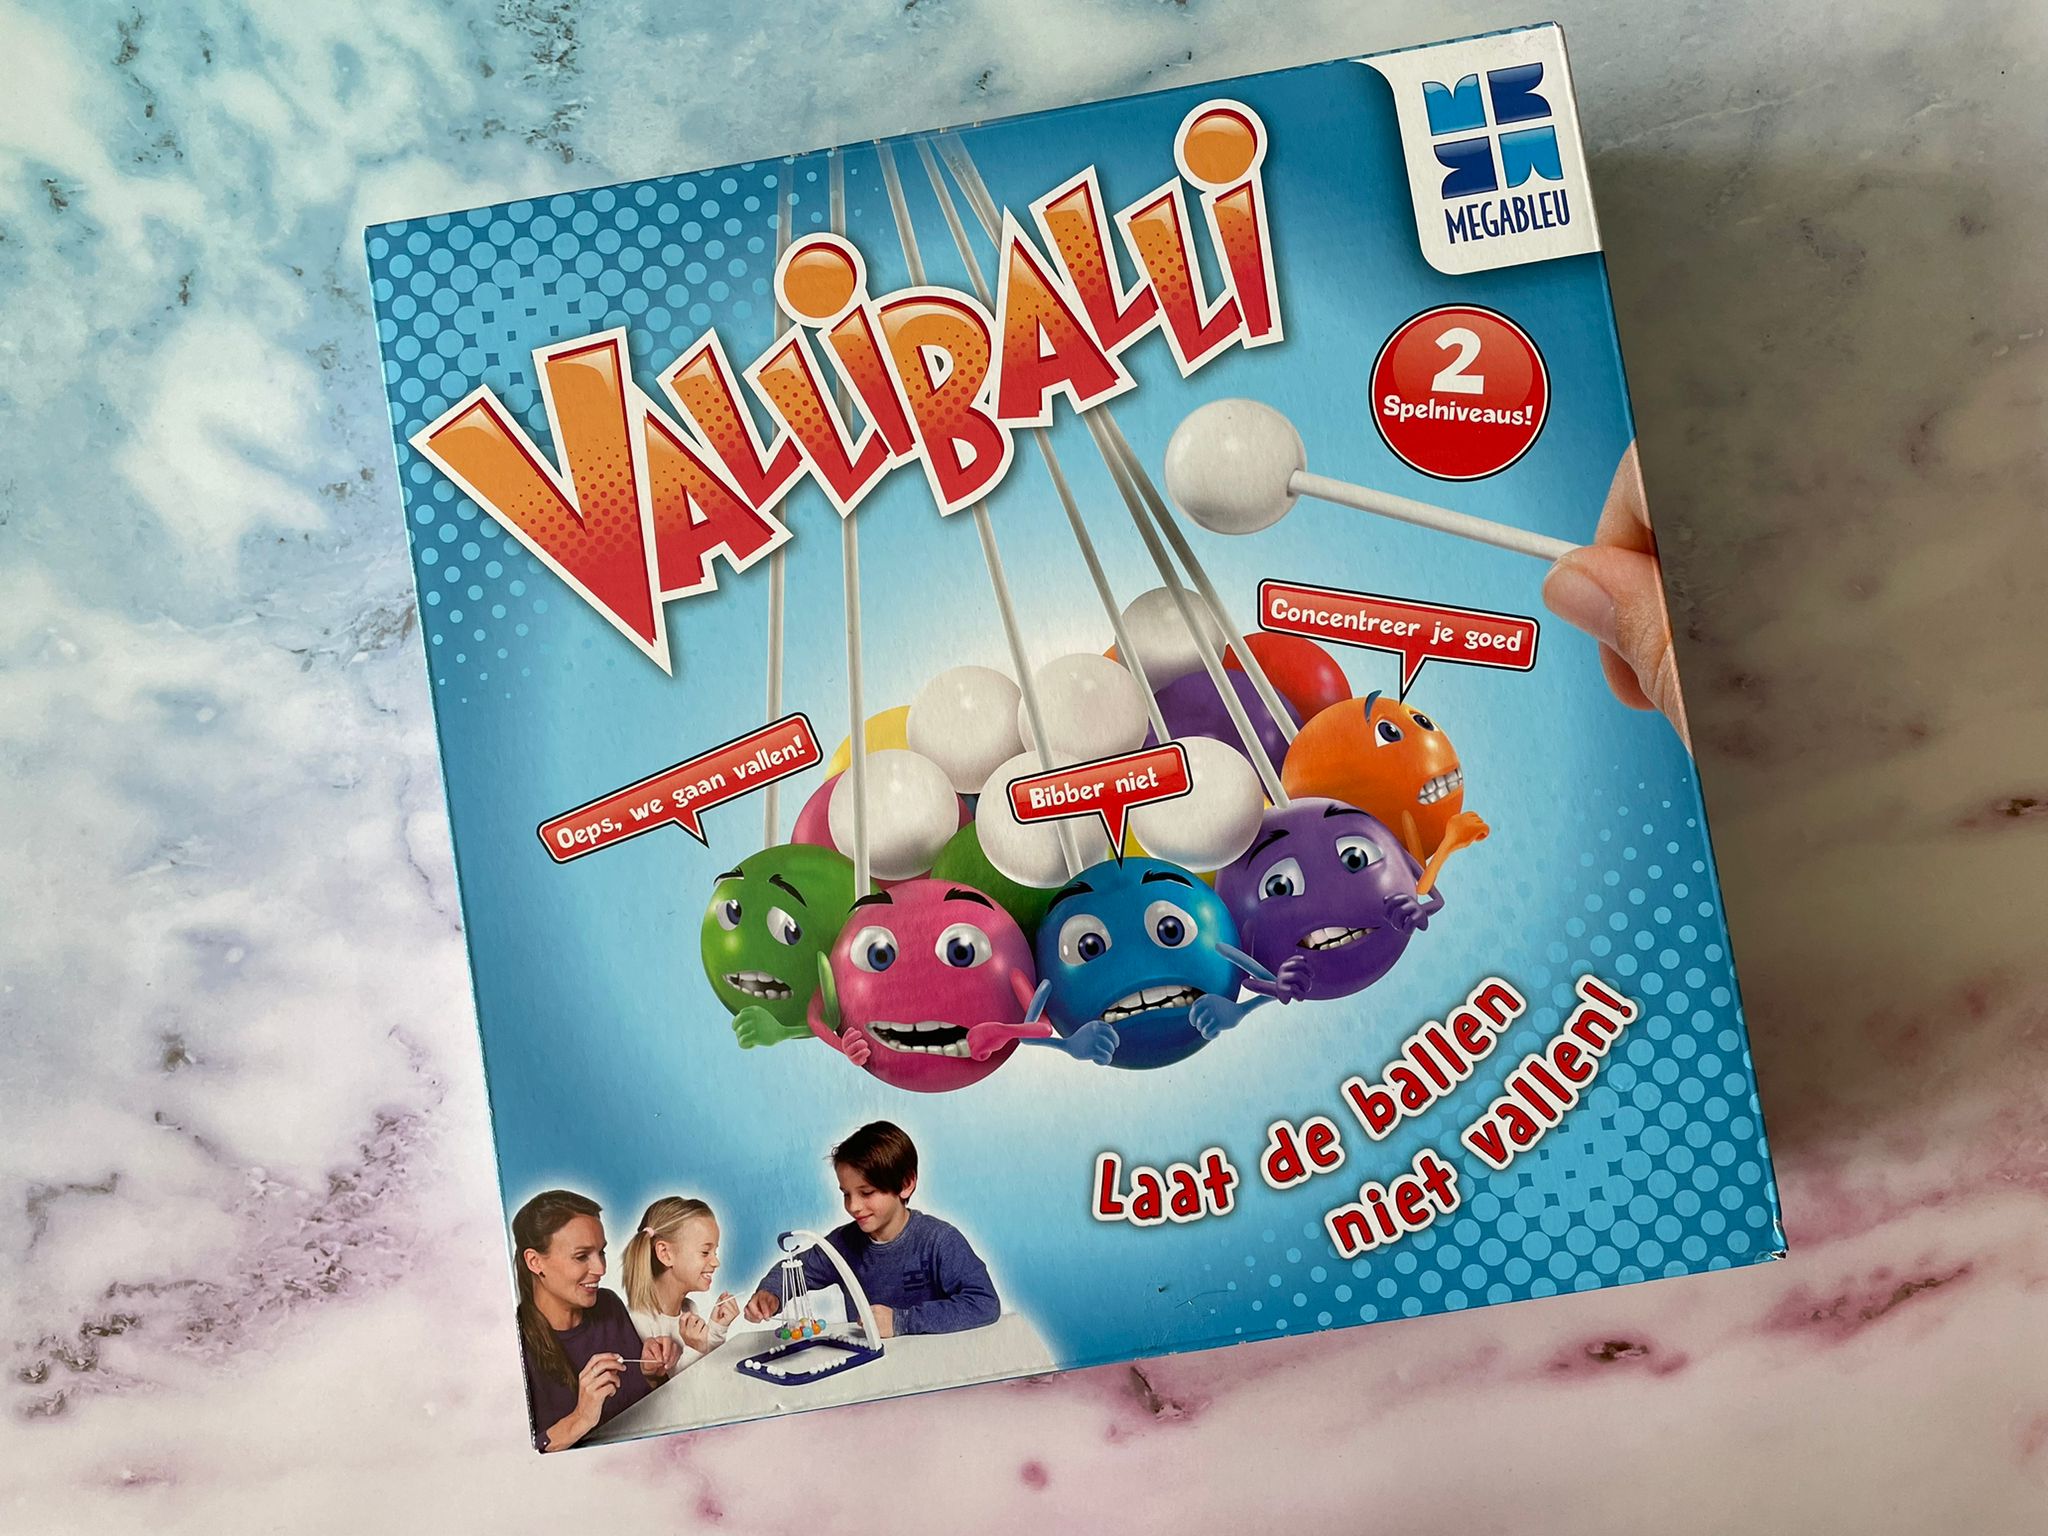 Augment Permanent toegang Valliballi - een spel met vallende ballen -